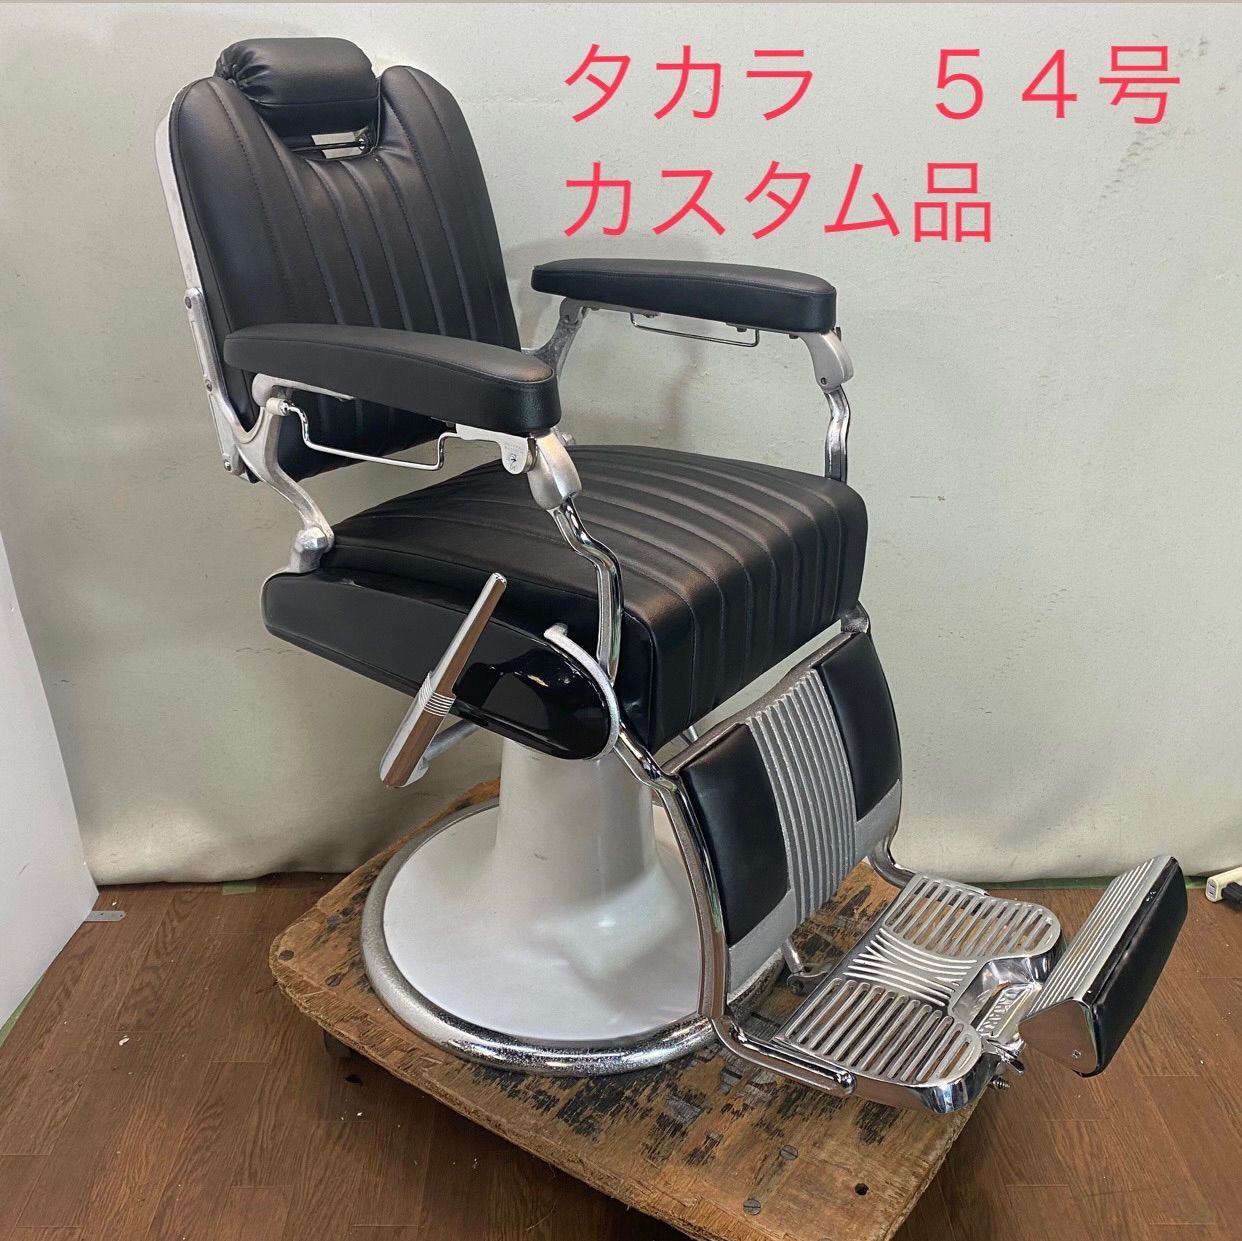 タカラベルモント製 理容椅子 54号 カスタム品 - メルカリ